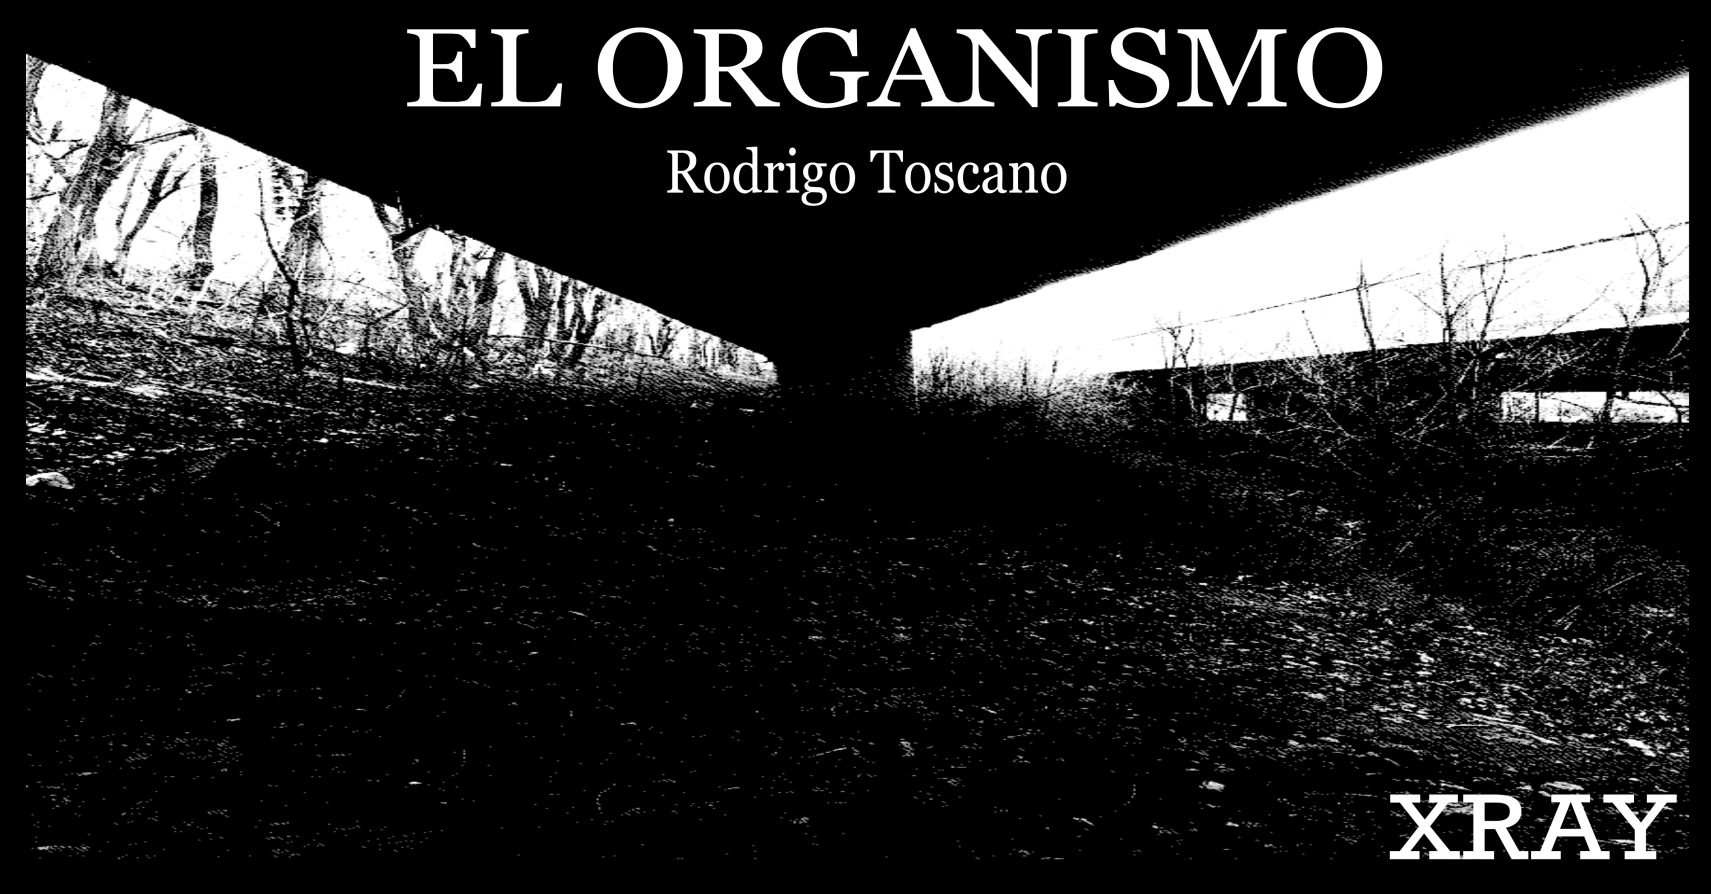 EL ORGANISMO by Rodrigo Toscano